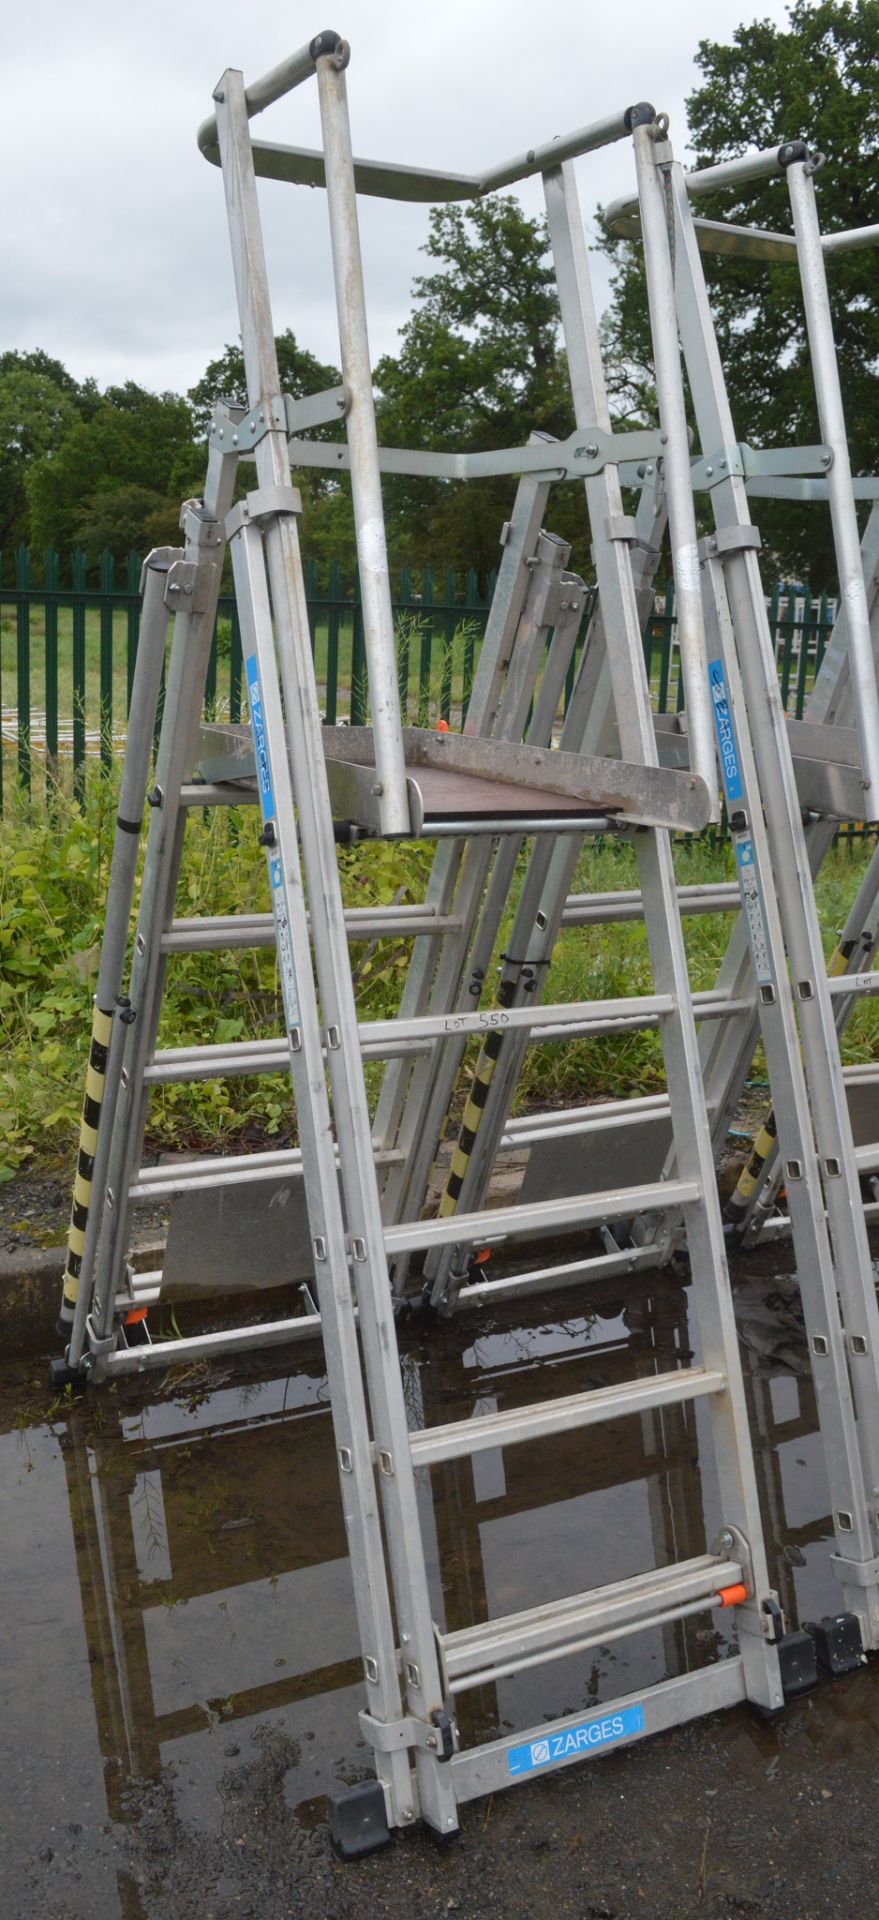 Zarges aluminium podium ladder A777938 - Image 2 of 2